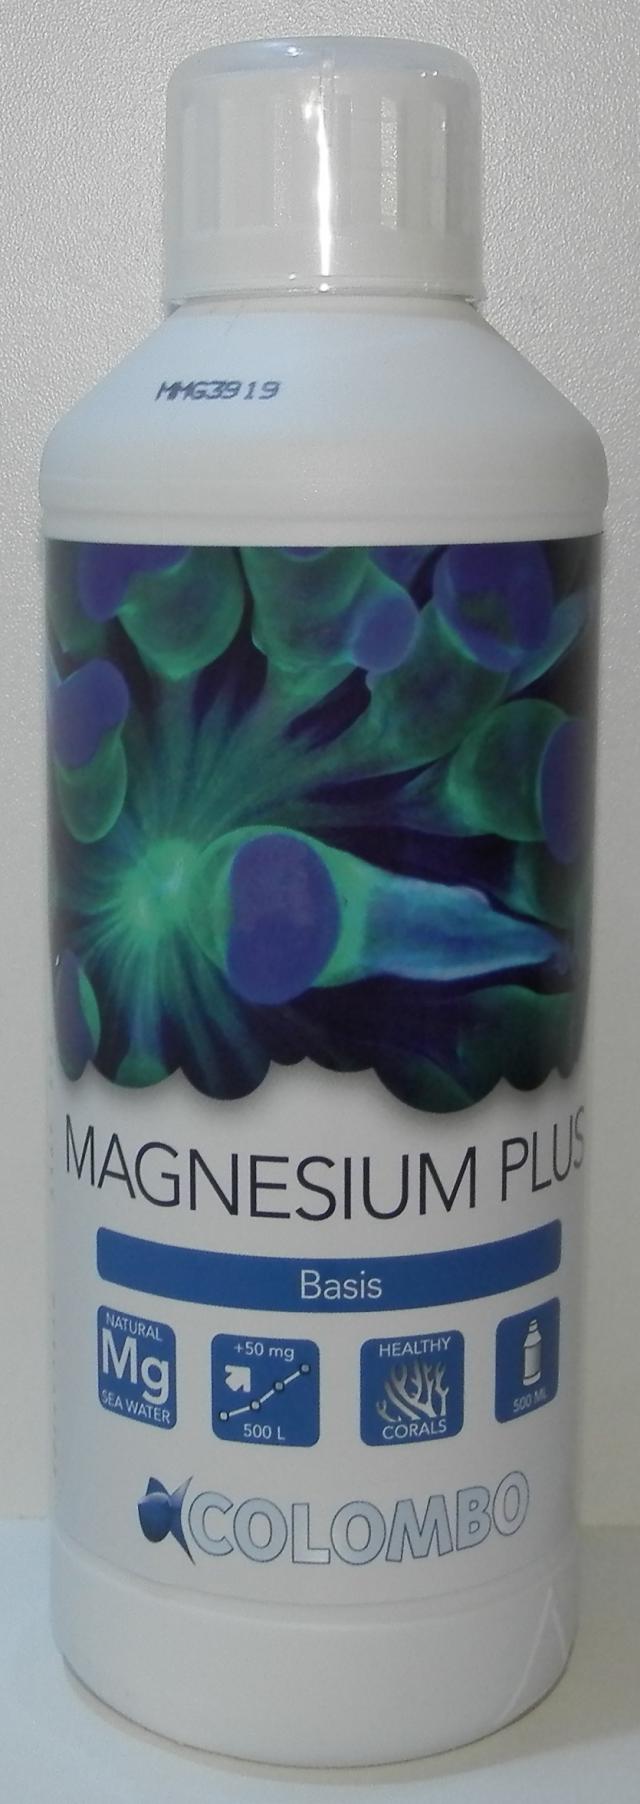 magnesium plus 500ml